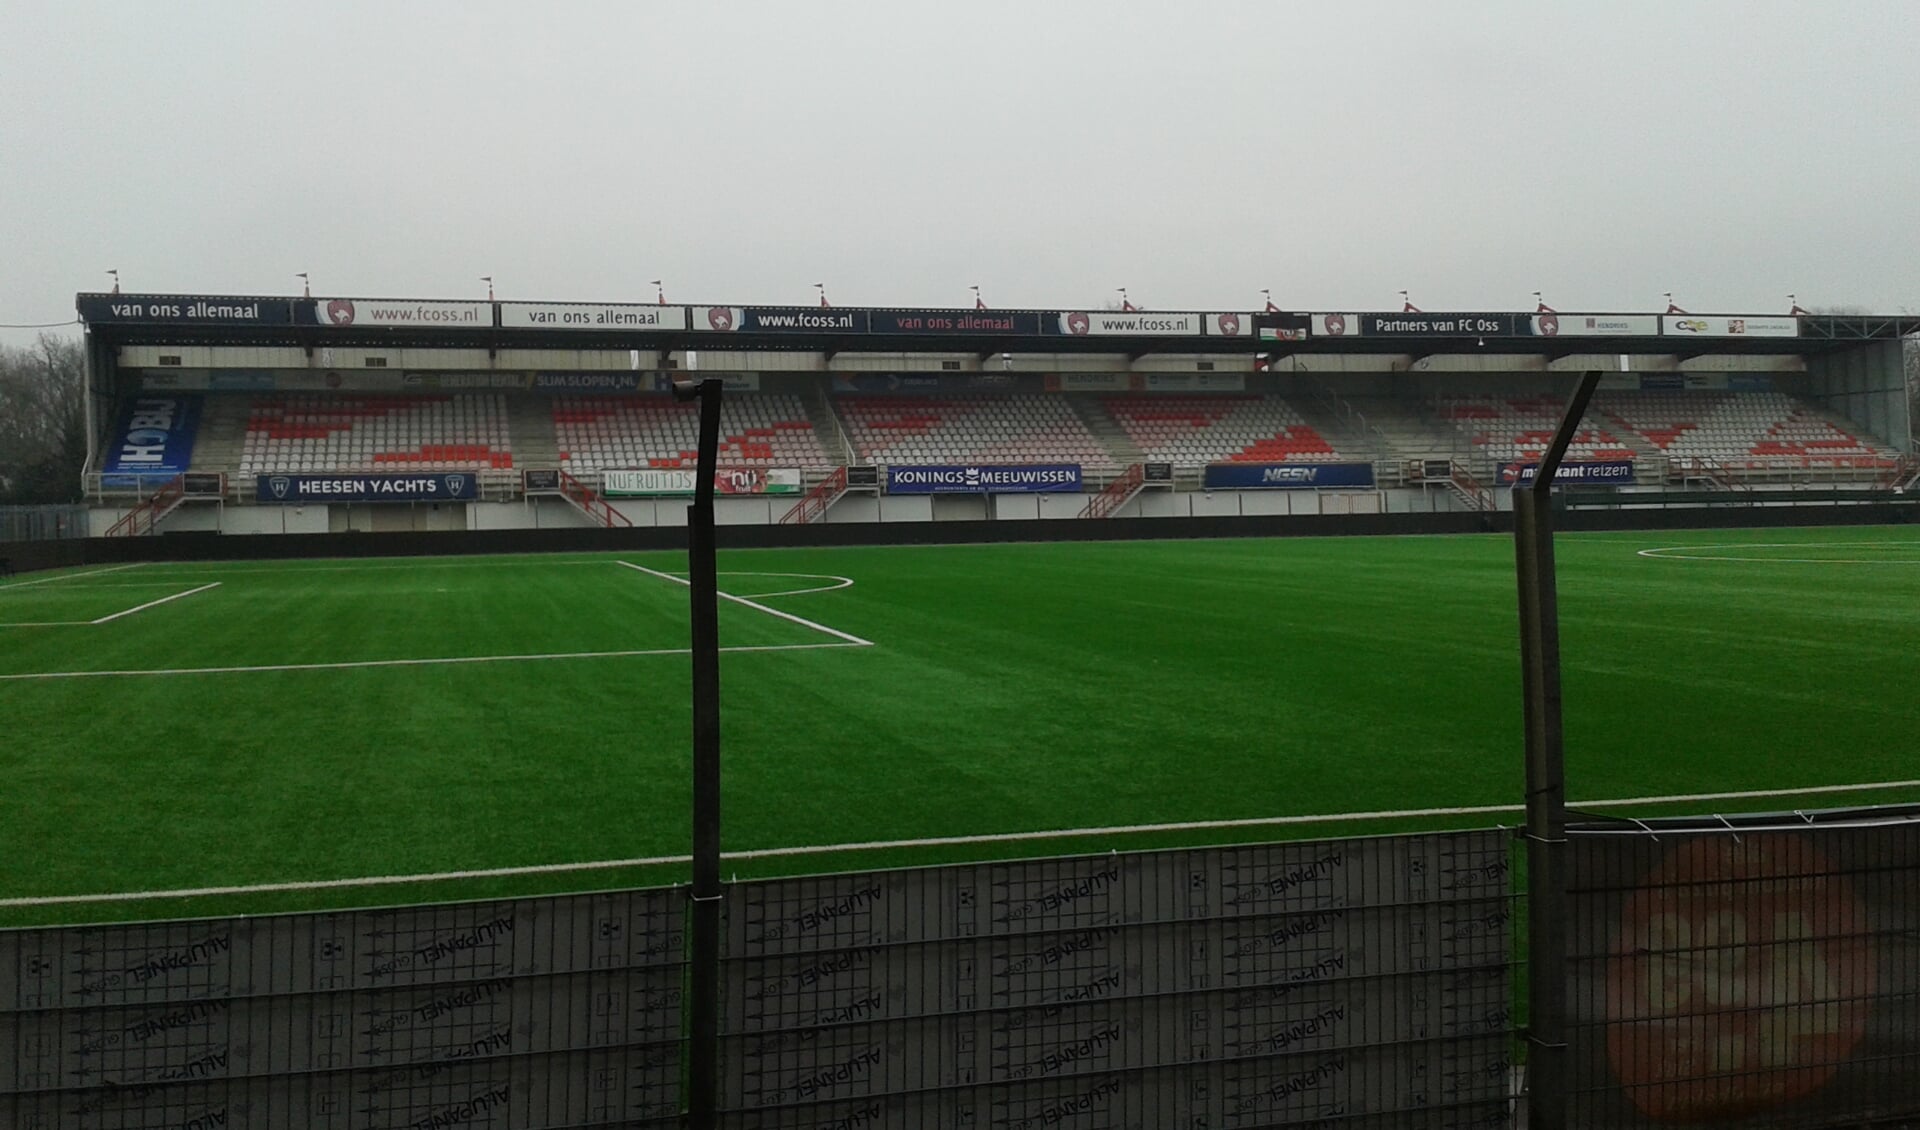 Het Frans Heesen Stadion.